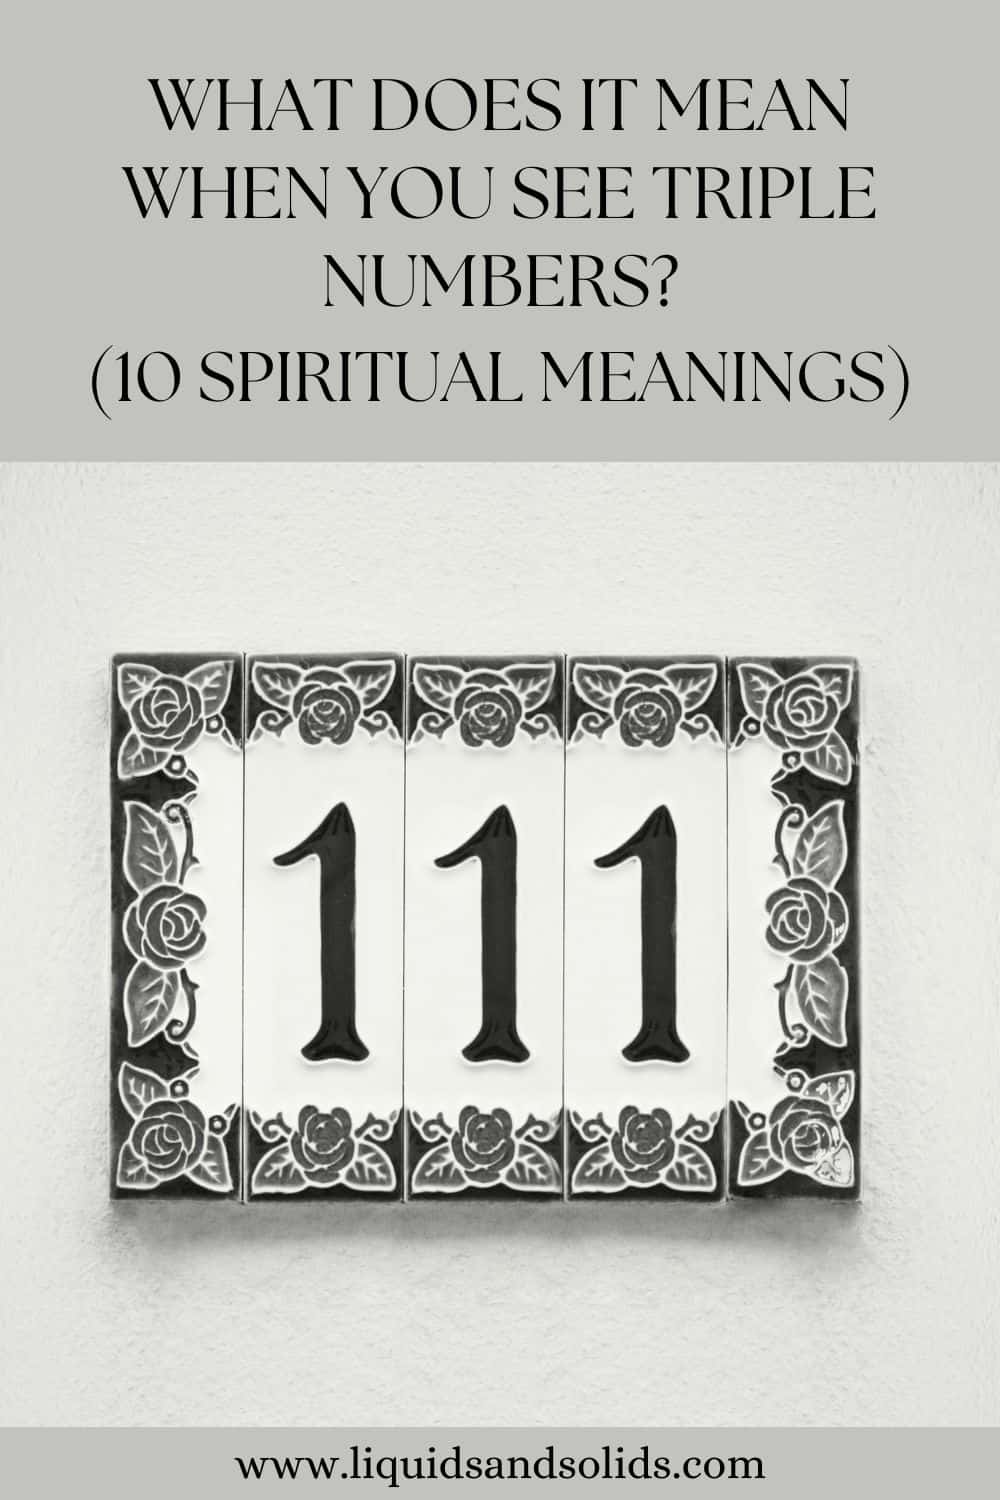  Mit jelent, ha hármas számokat látsz? (10 spirituális jelentés)